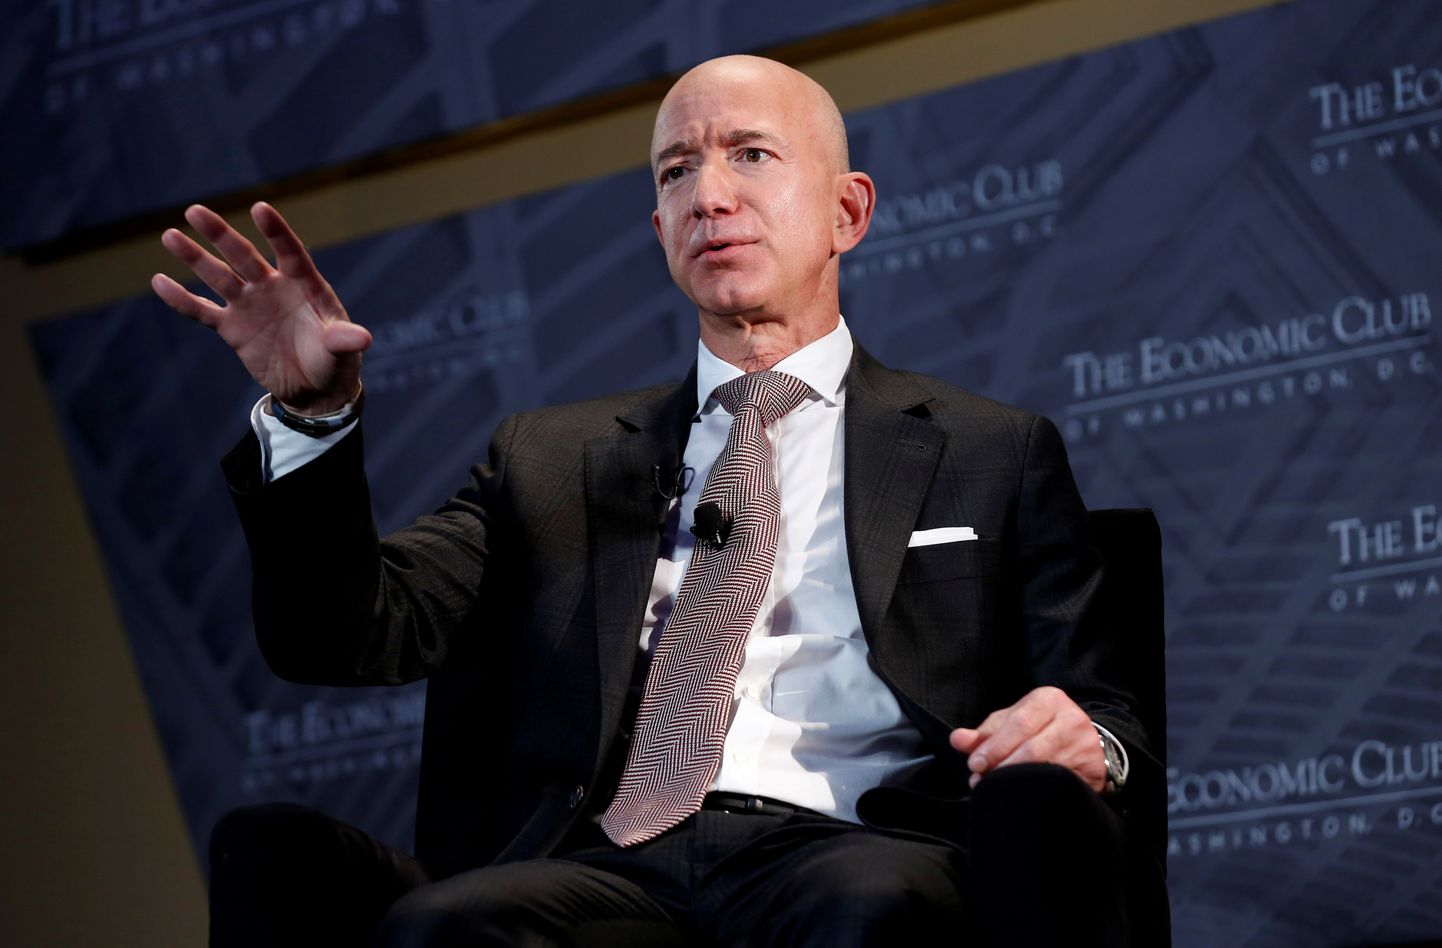 Maailma rikkaim inimene on Jeff Bezos